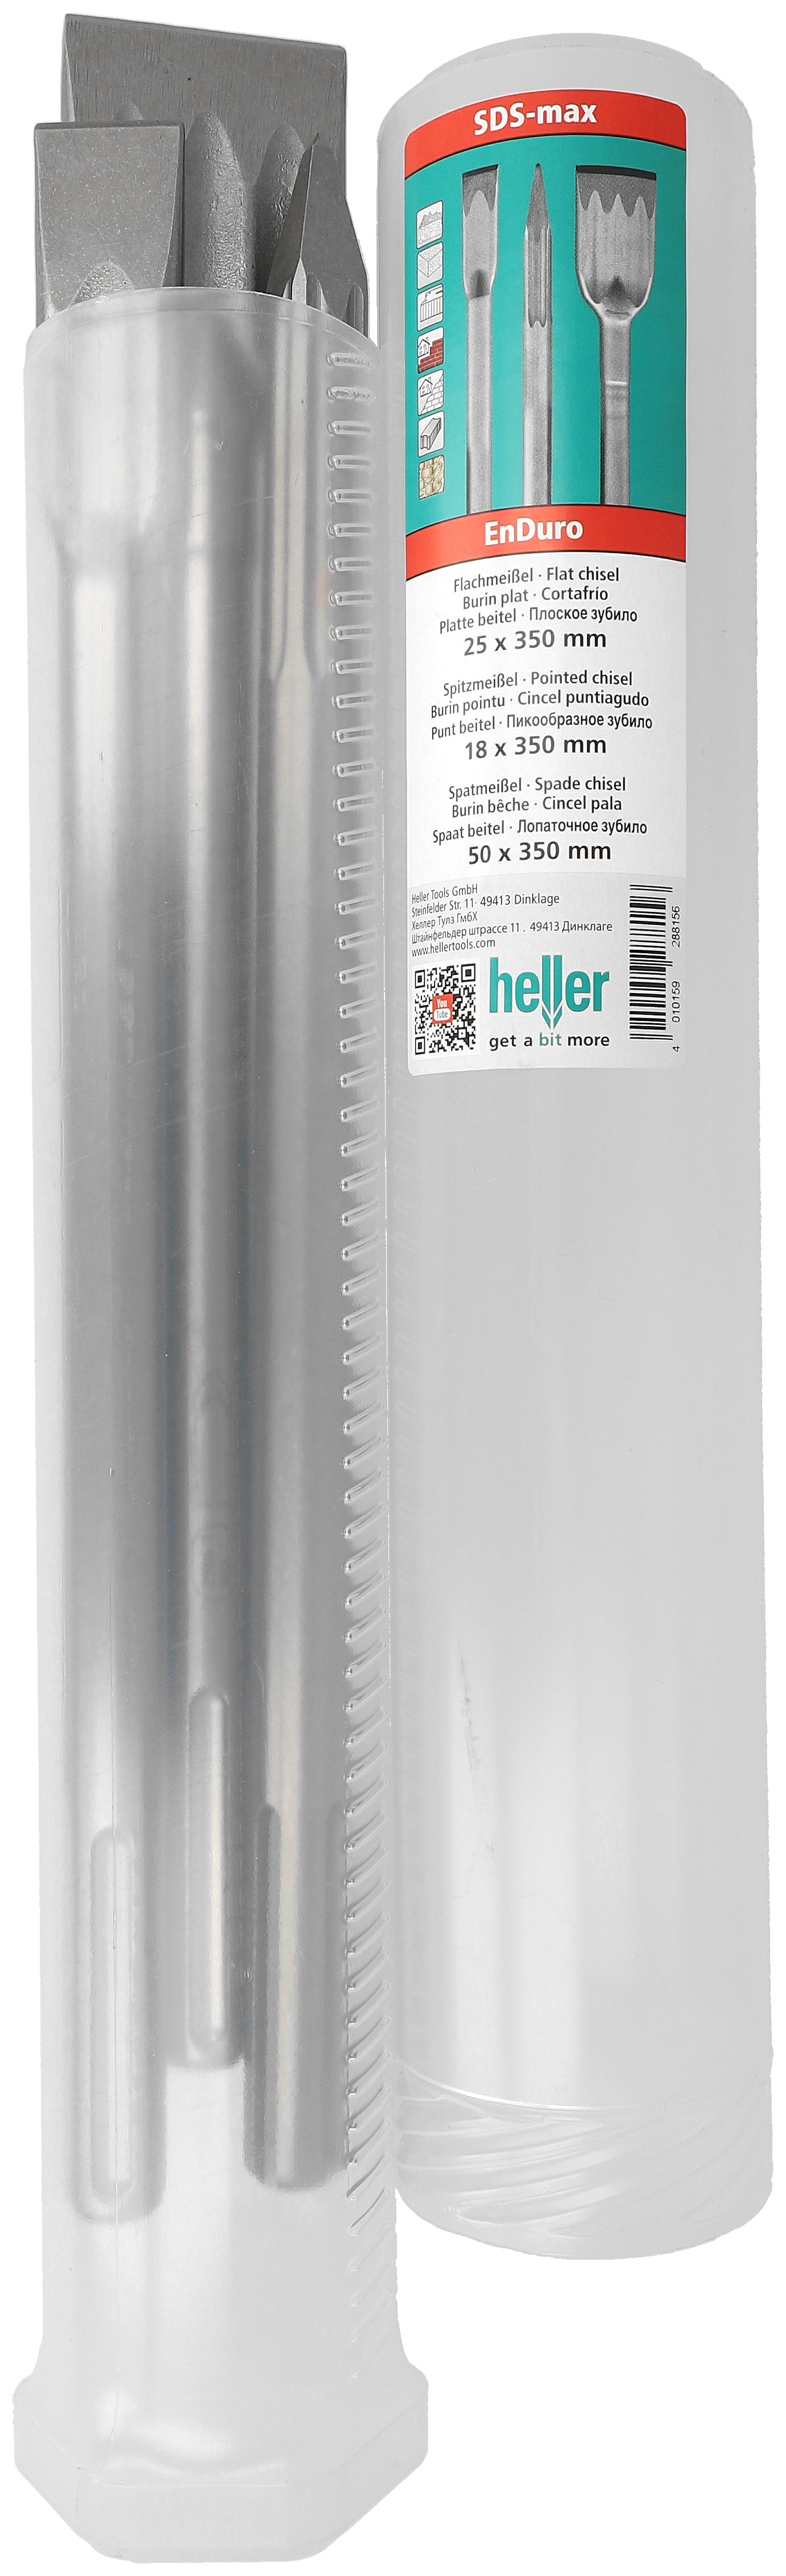 Heller Tools EnDuro SDS-max Meißel, Set 3-teilig, Spitz-/Flach-/Spatmeißel